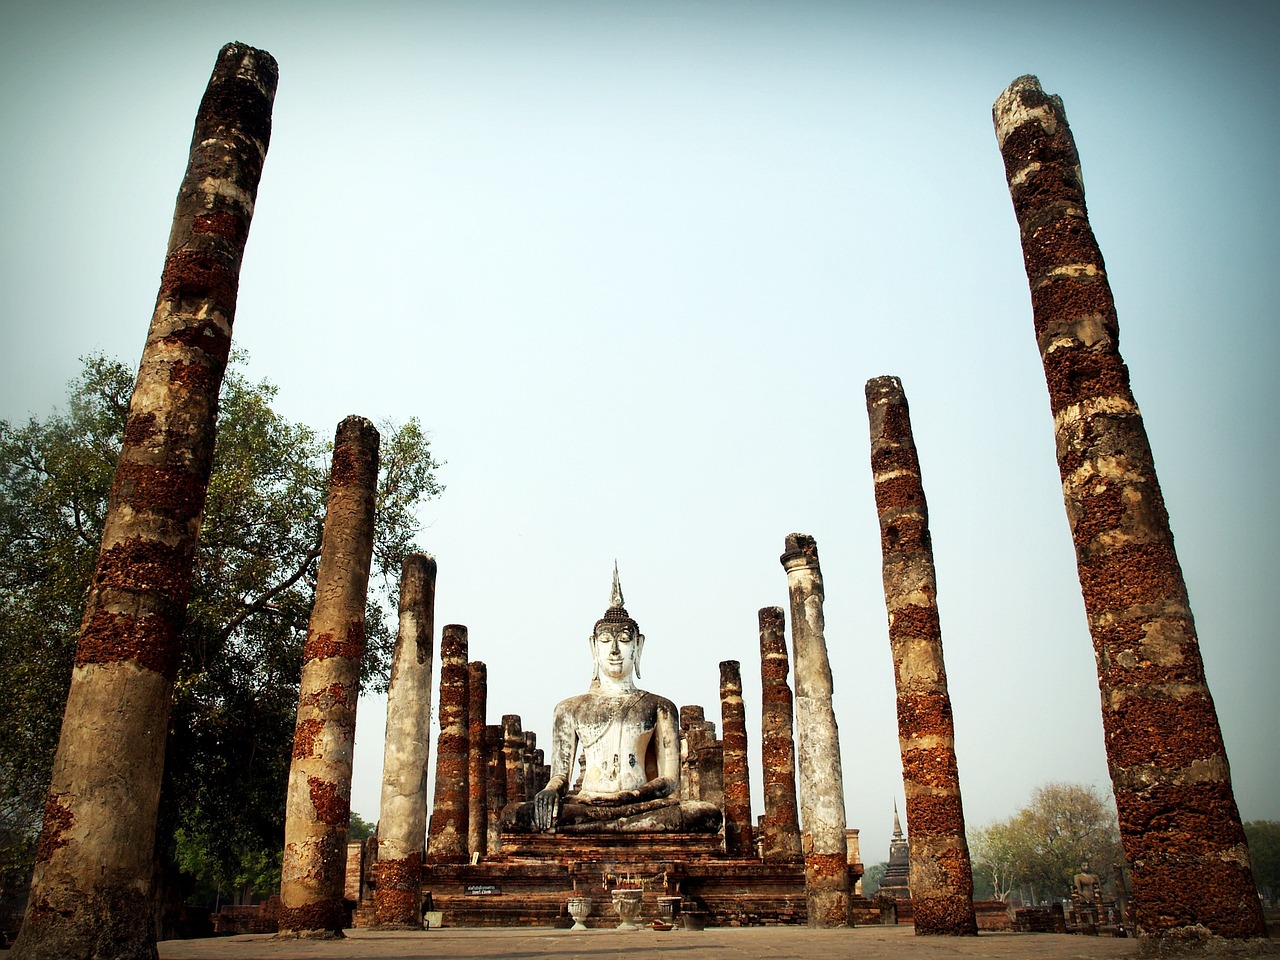 Sri Satchanalai Tayland'ın Tarihi Tapınaklarıyla Ünlü Şehri